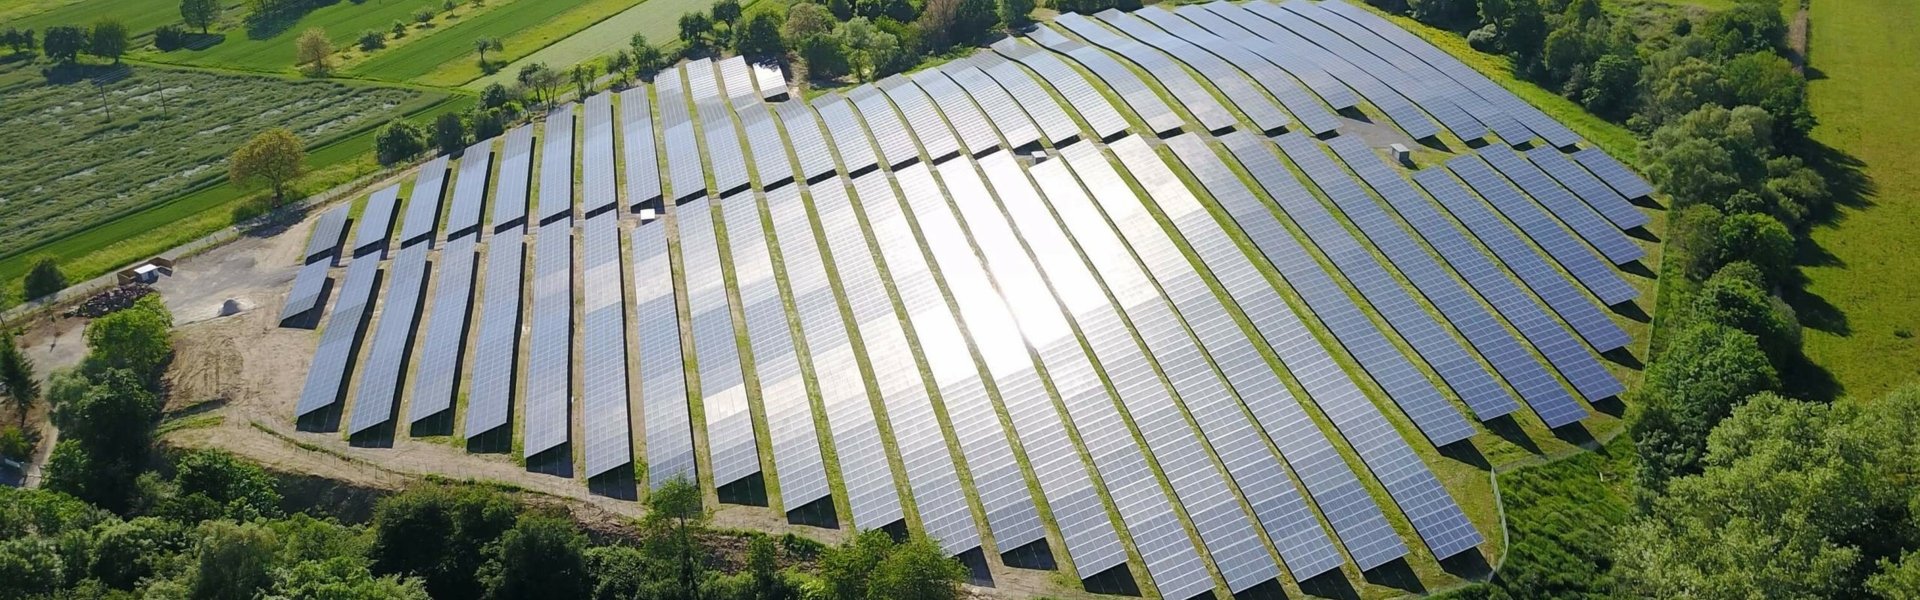 Luftaufnahme des Solarparks in Malsch